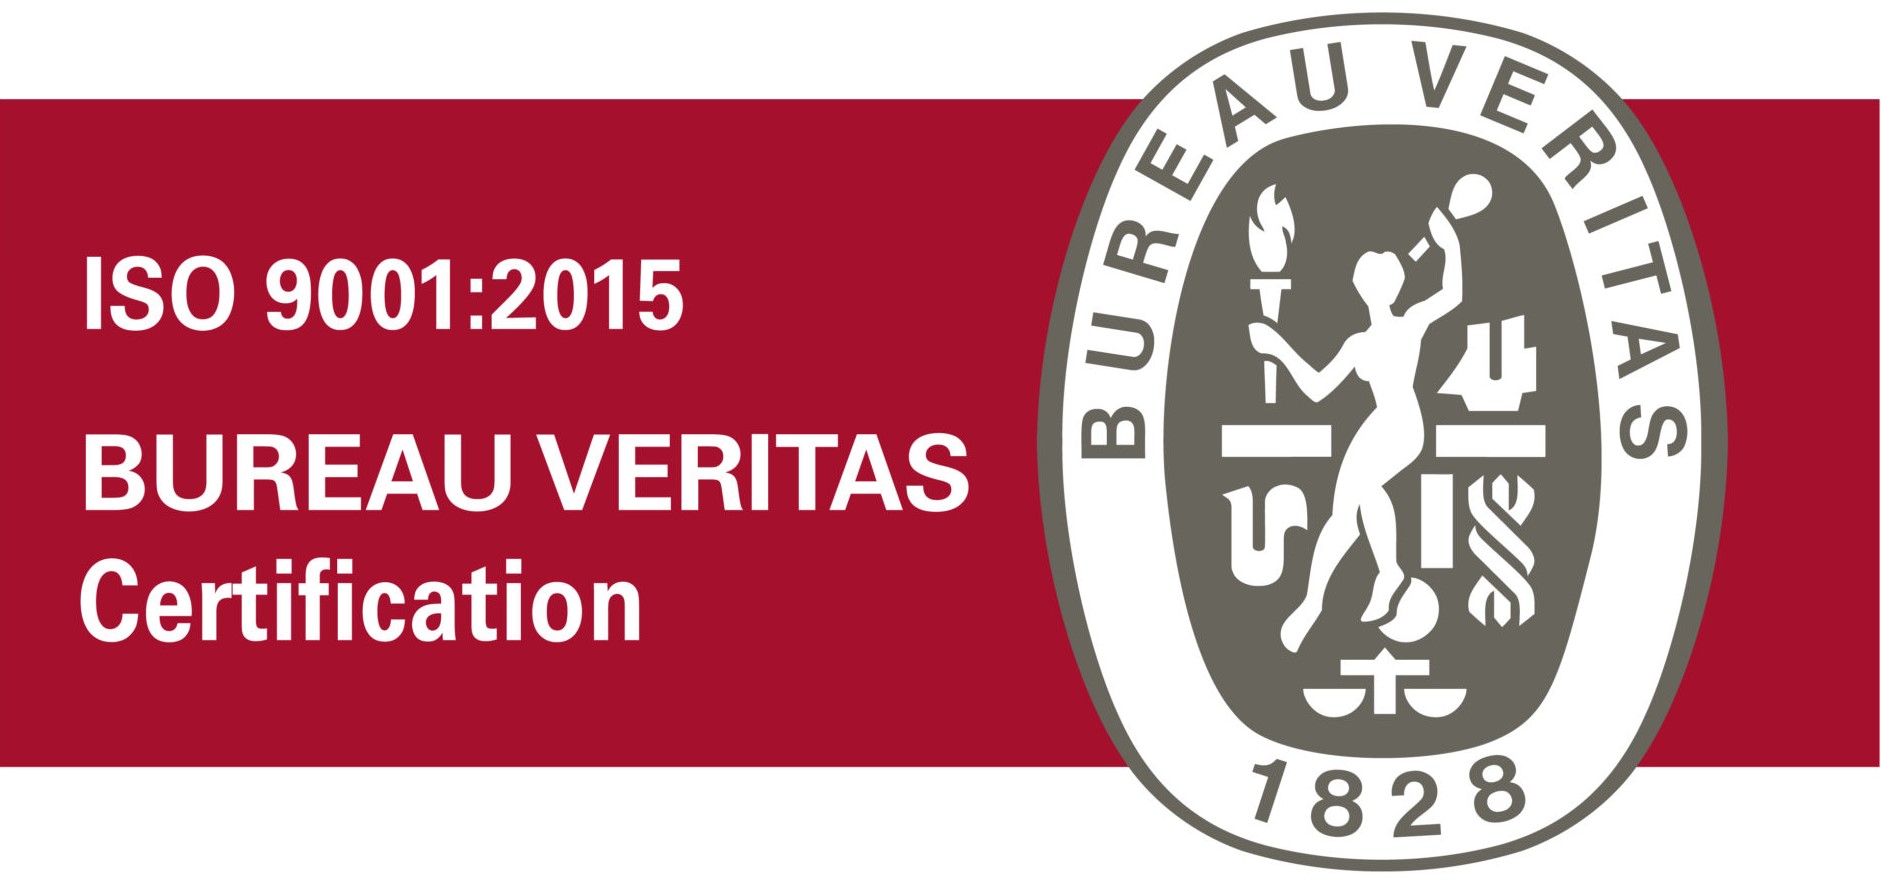 Наша система менеджмента сертифицирована Bureau Veritas Certification по стандарту ISO 9001:2015